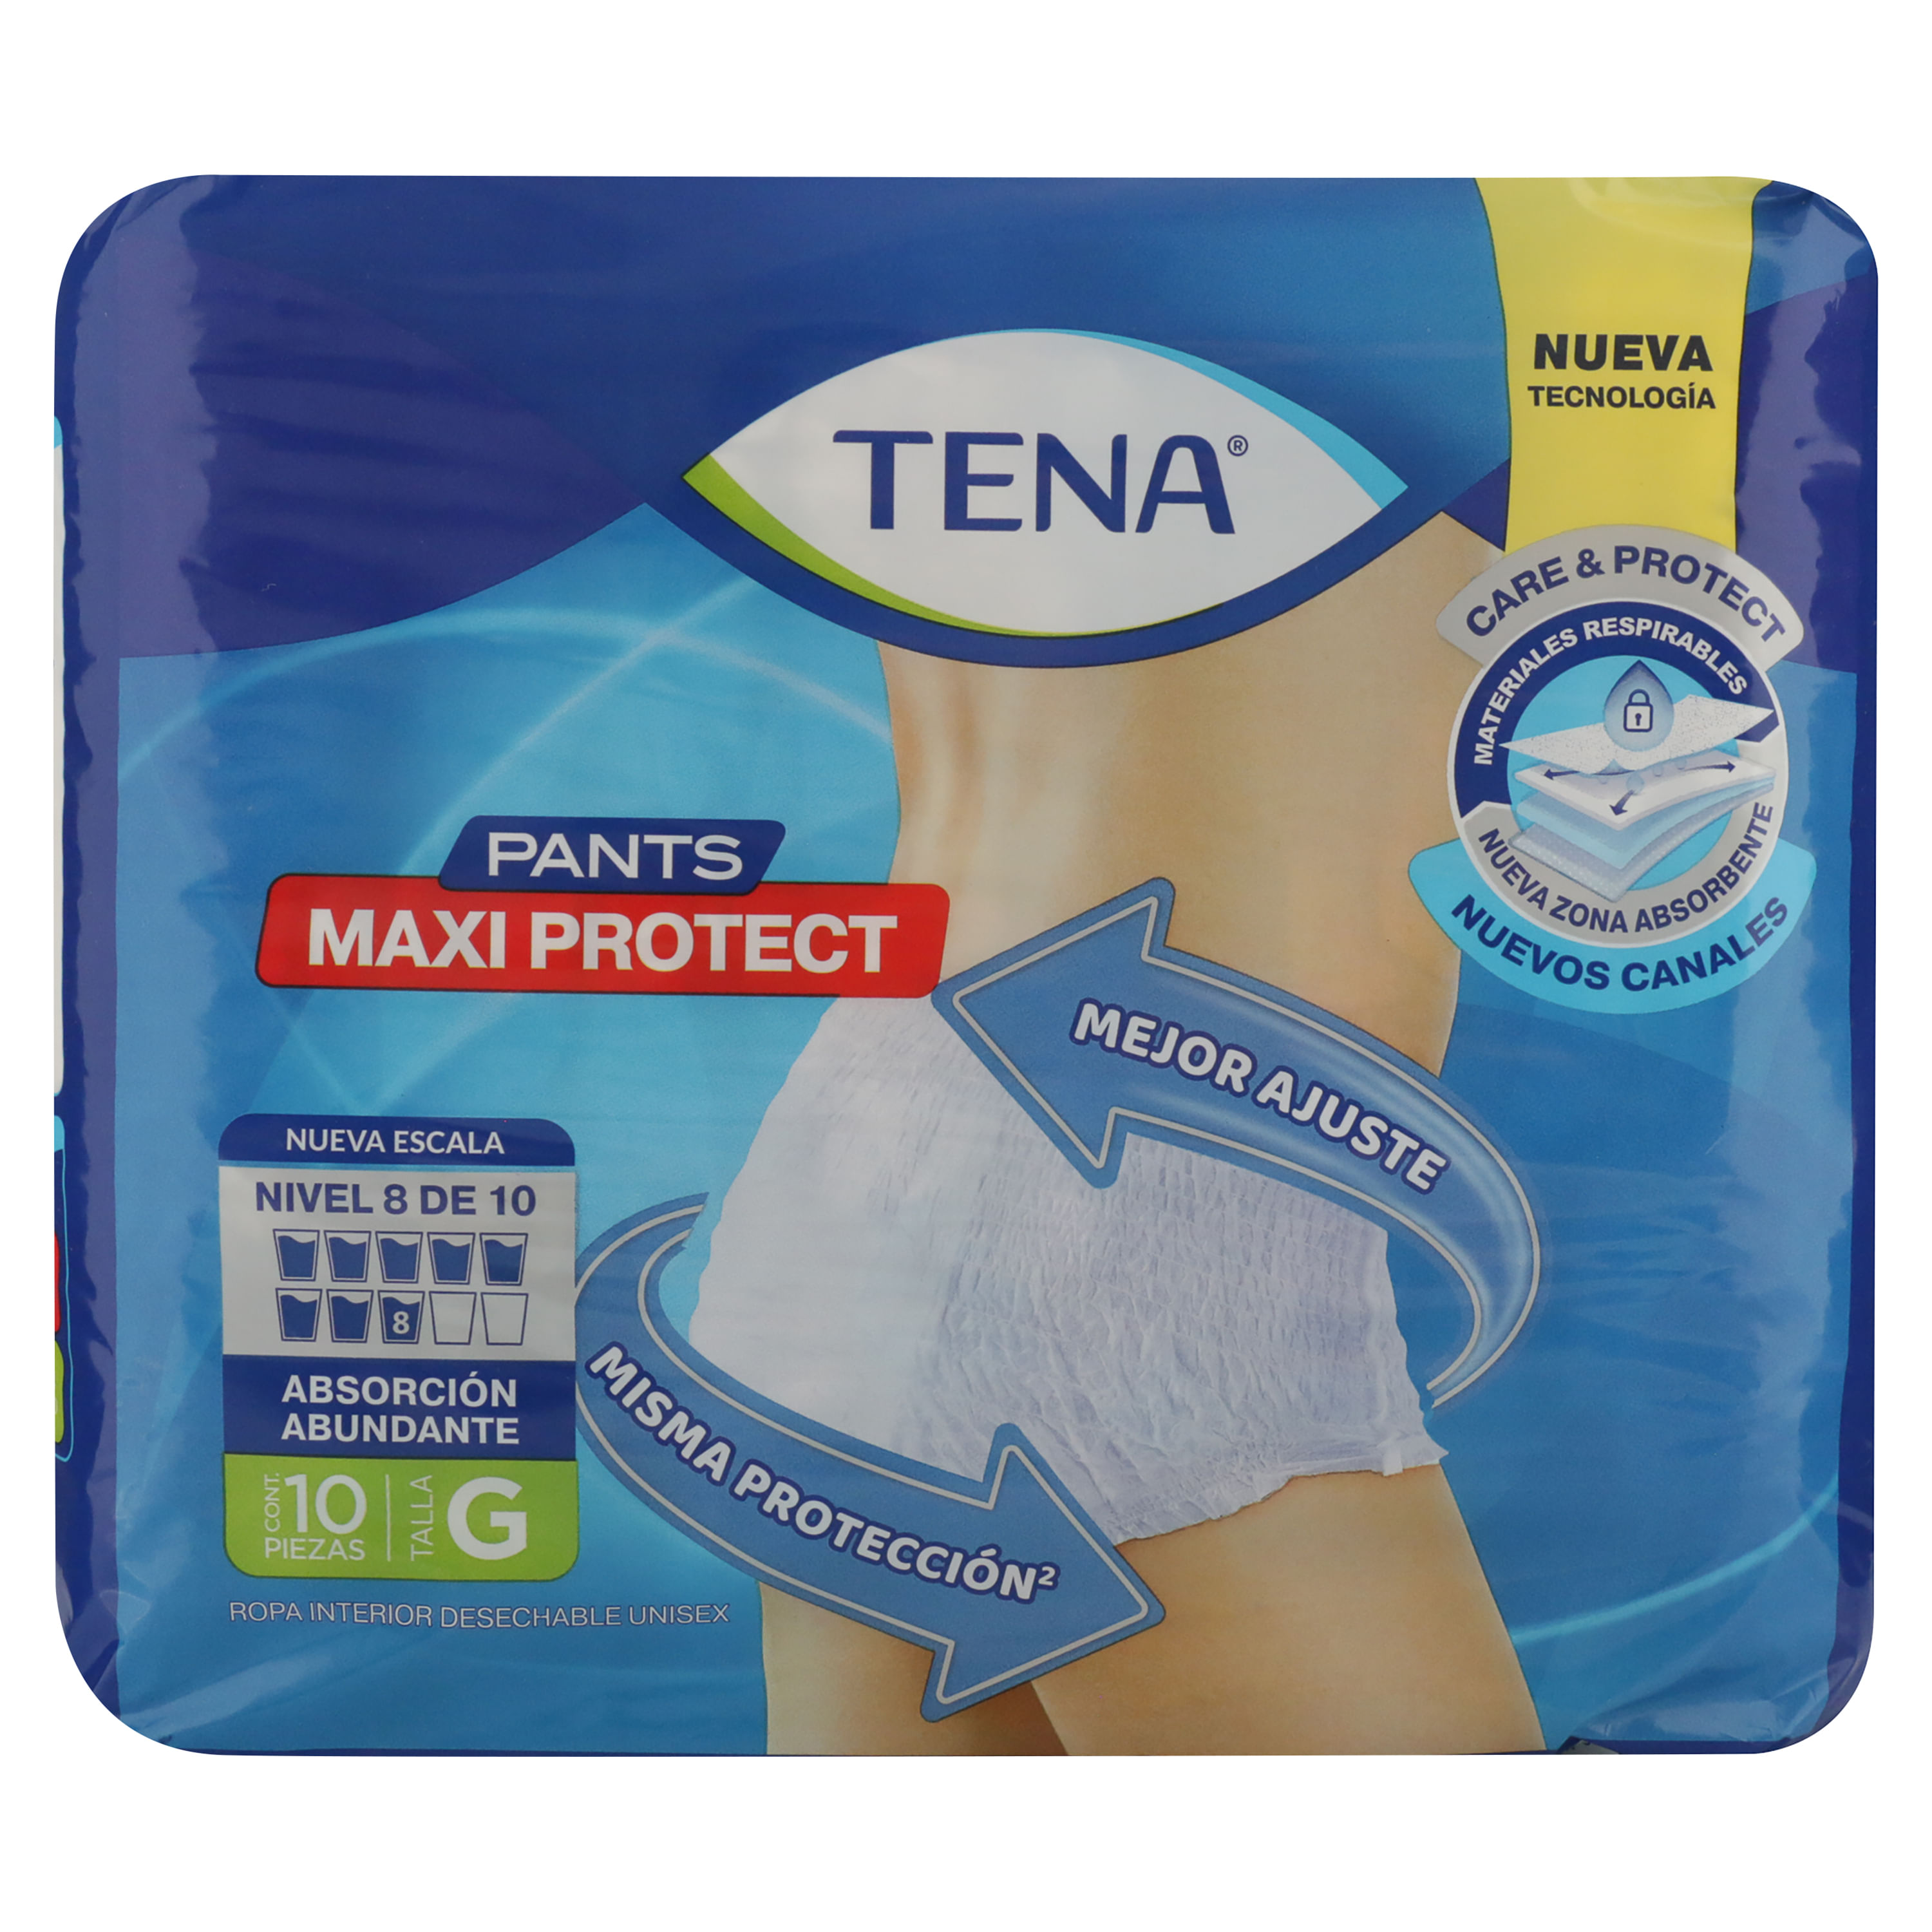 Tena-Pants-Maxi-Protect-G-10u-1-31443